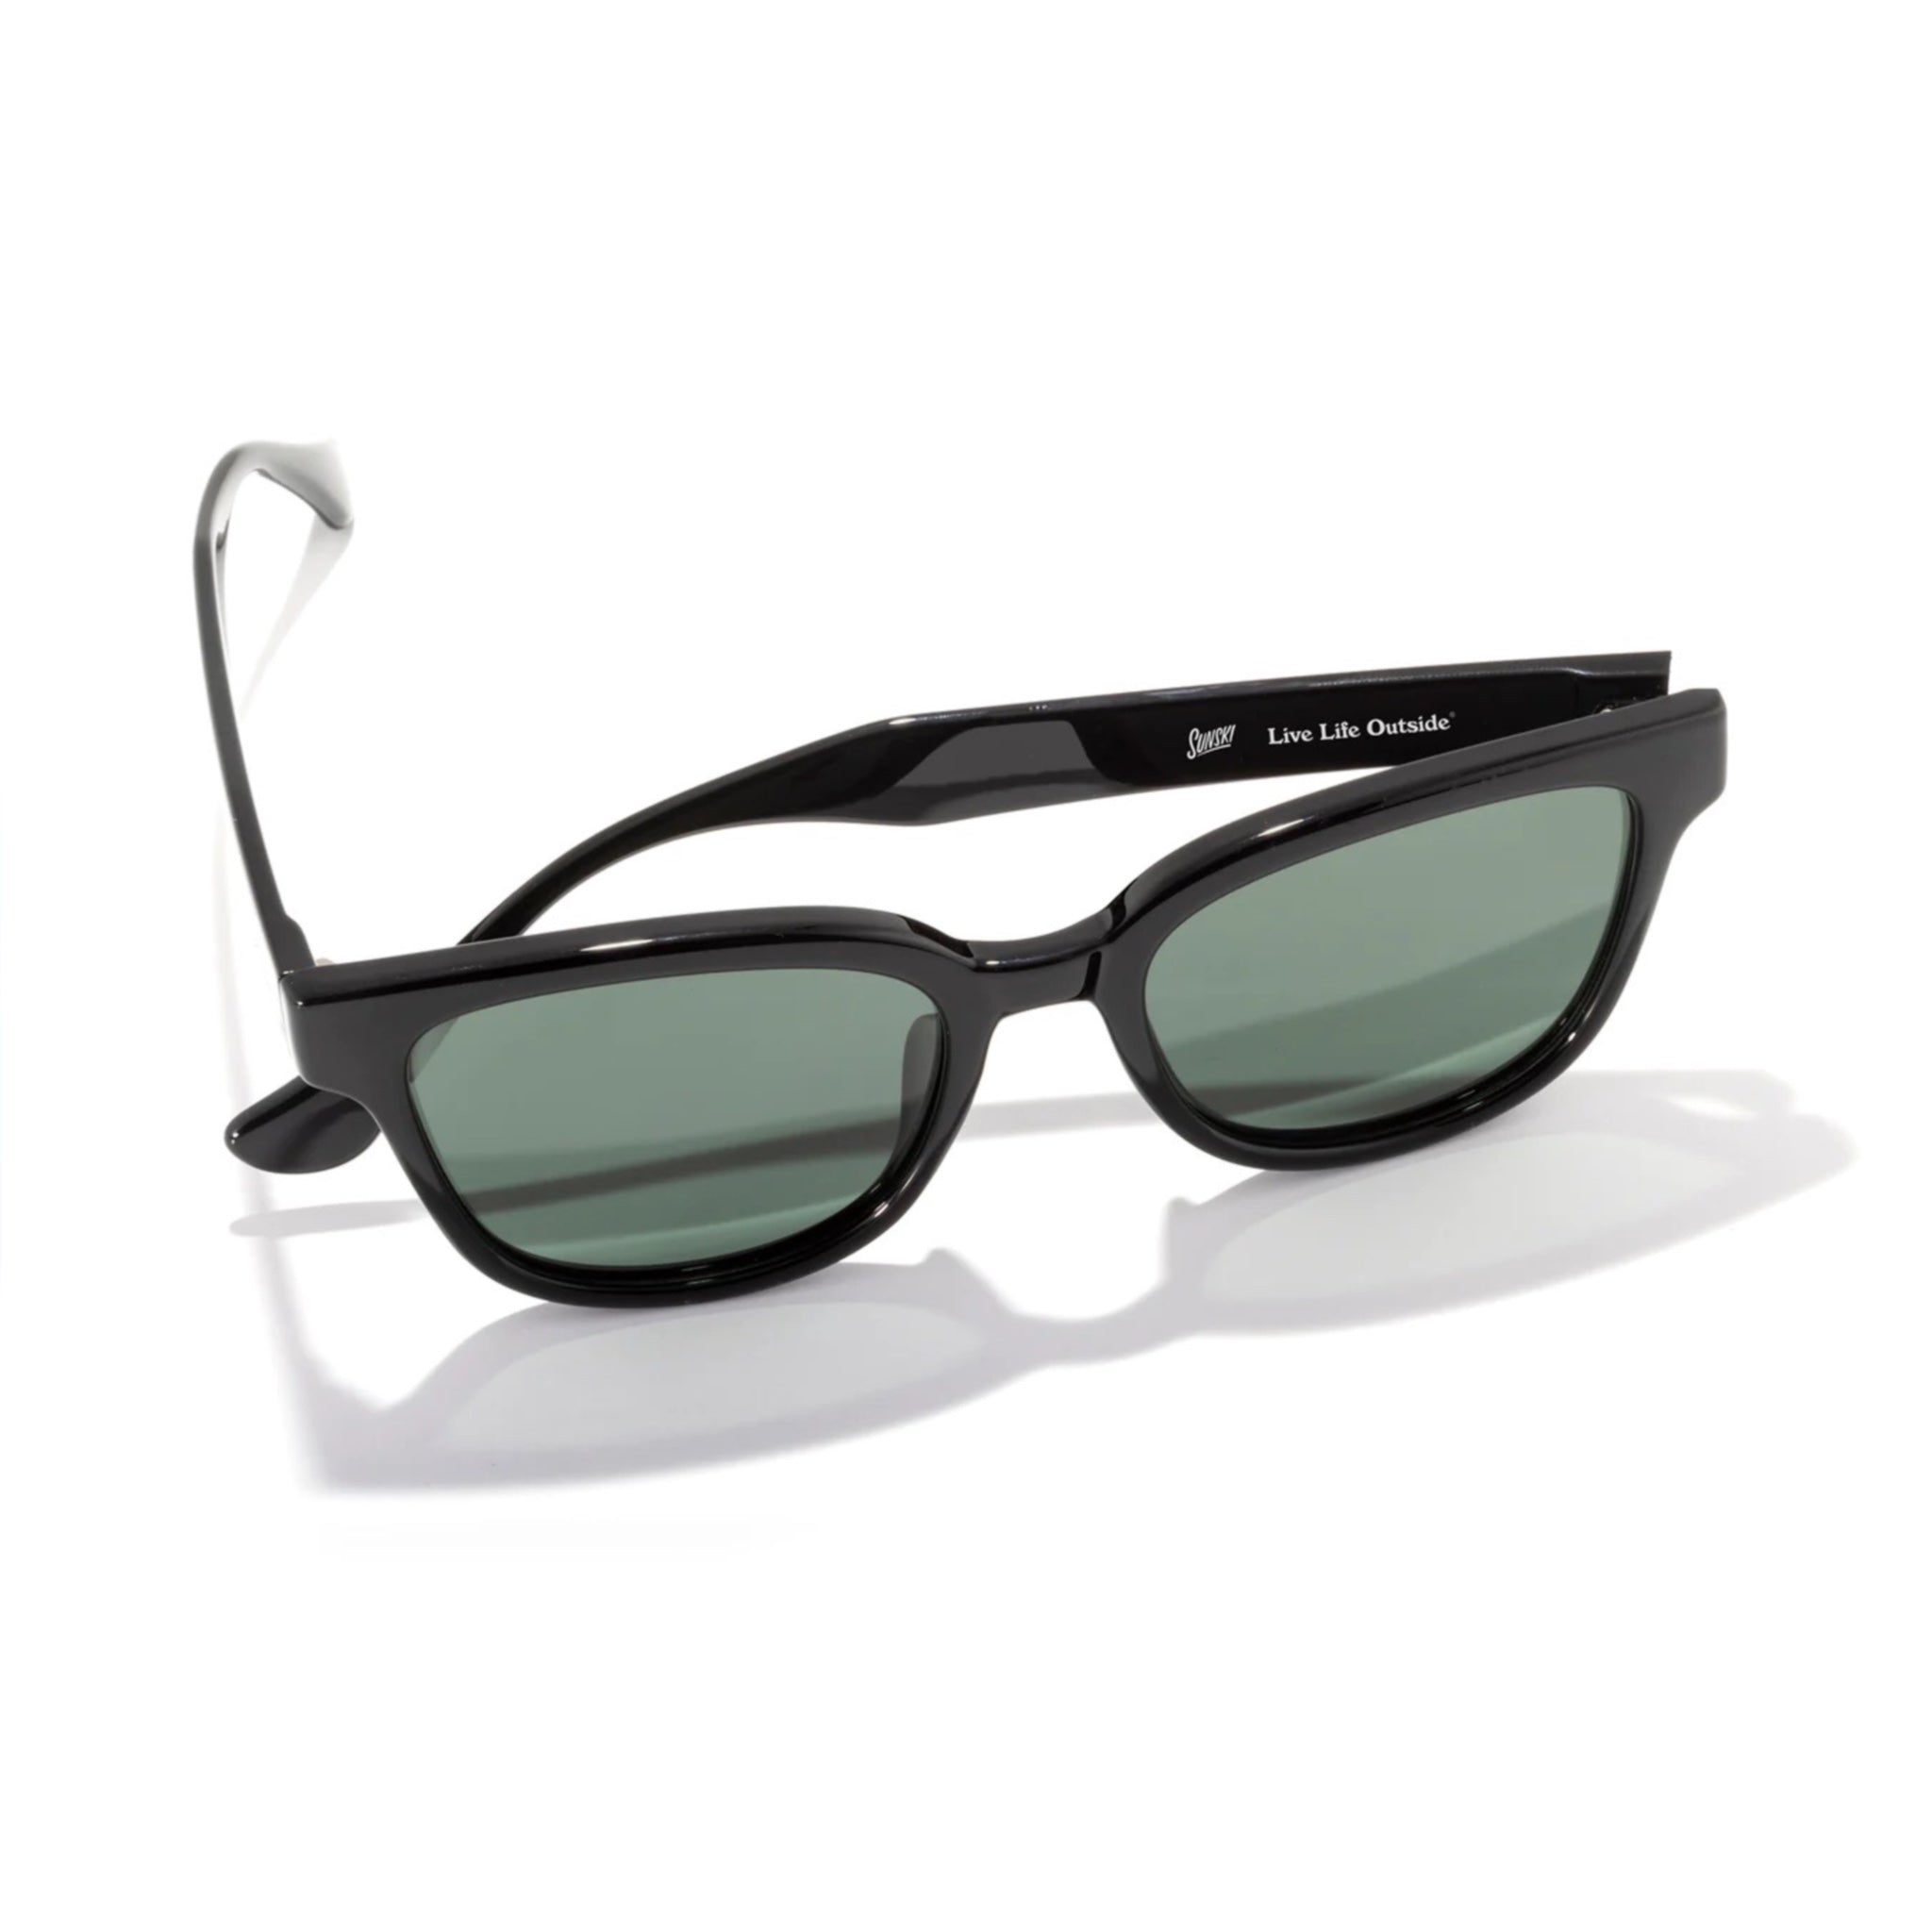 Sunski Miho Polarised Sunglasses - Black Forest